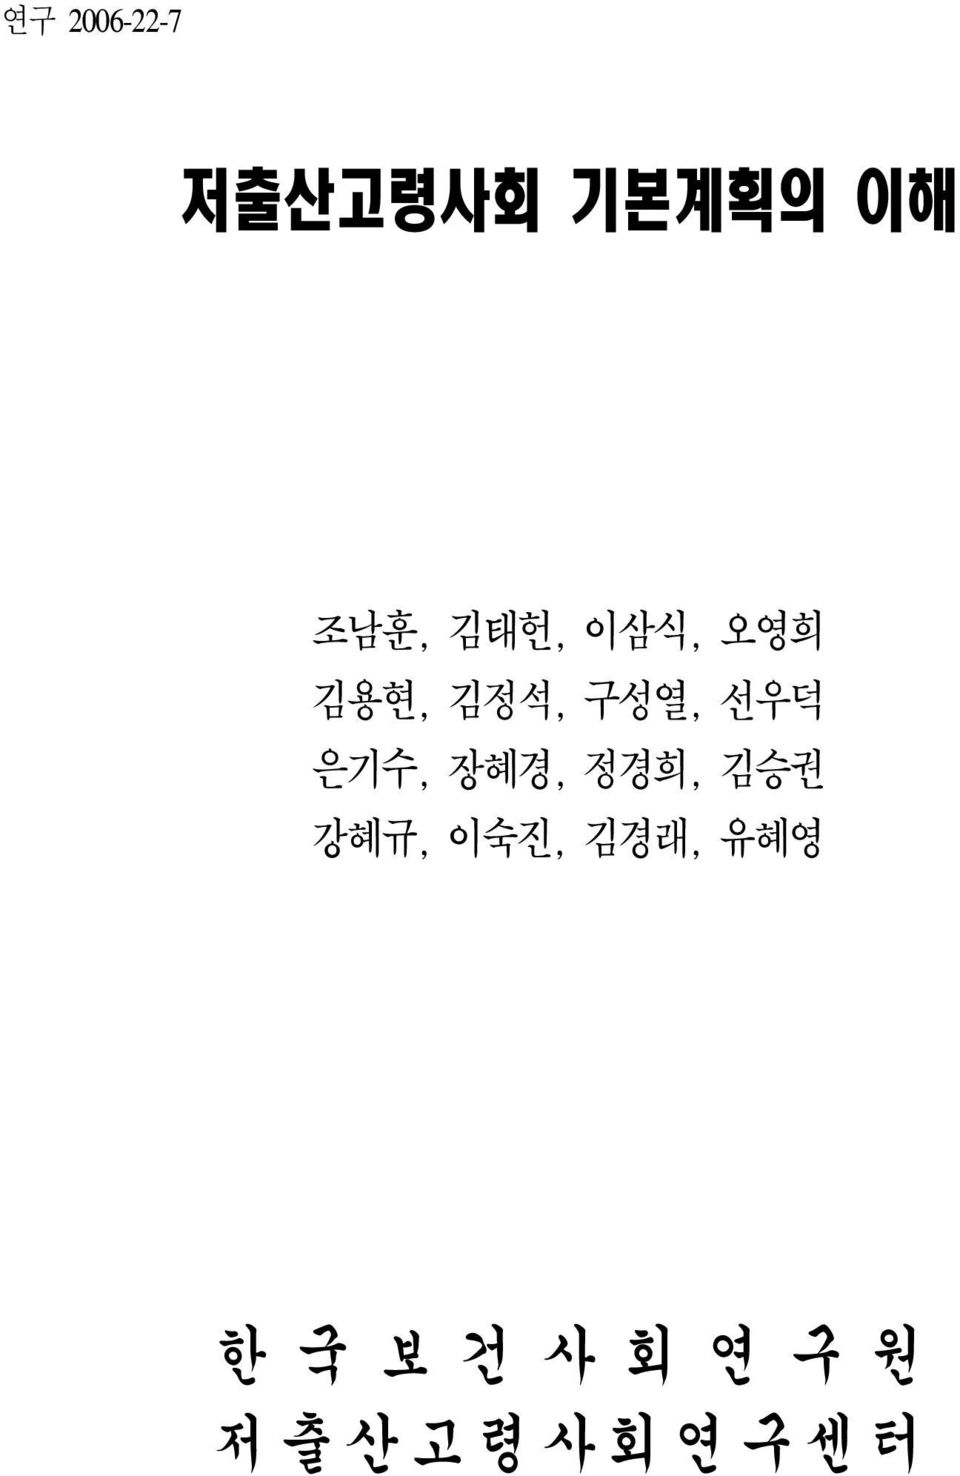 선우덕 은기수, 장혜경, 정경희, 김승권 강혜규, 이숙진,